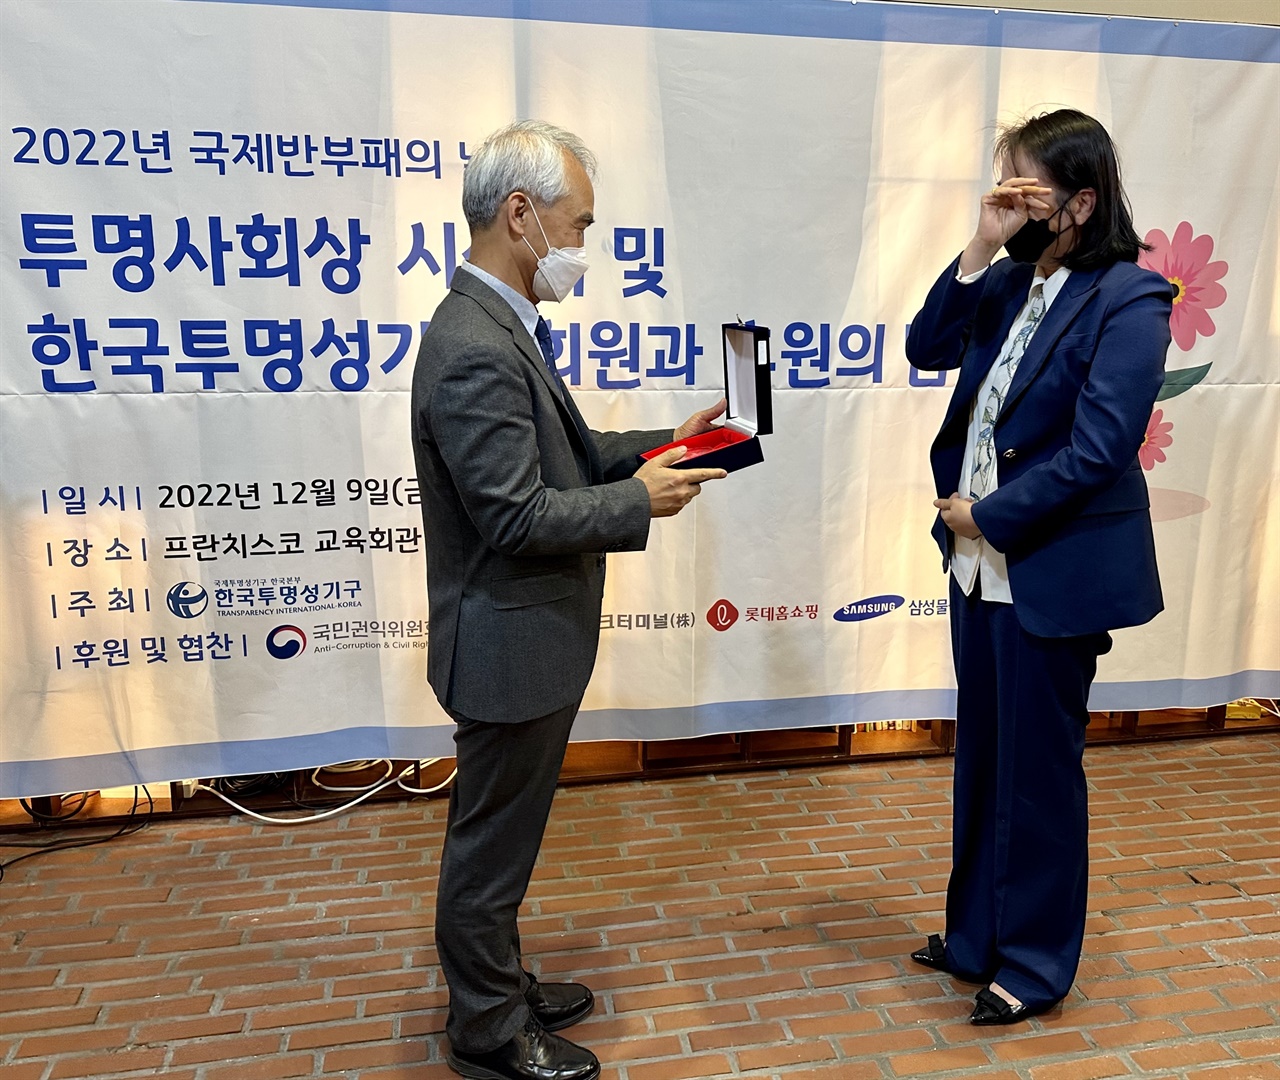 9일, 조선대 무용과 공진희 강사가 2022년 투명사회상을 수상하고 있다.